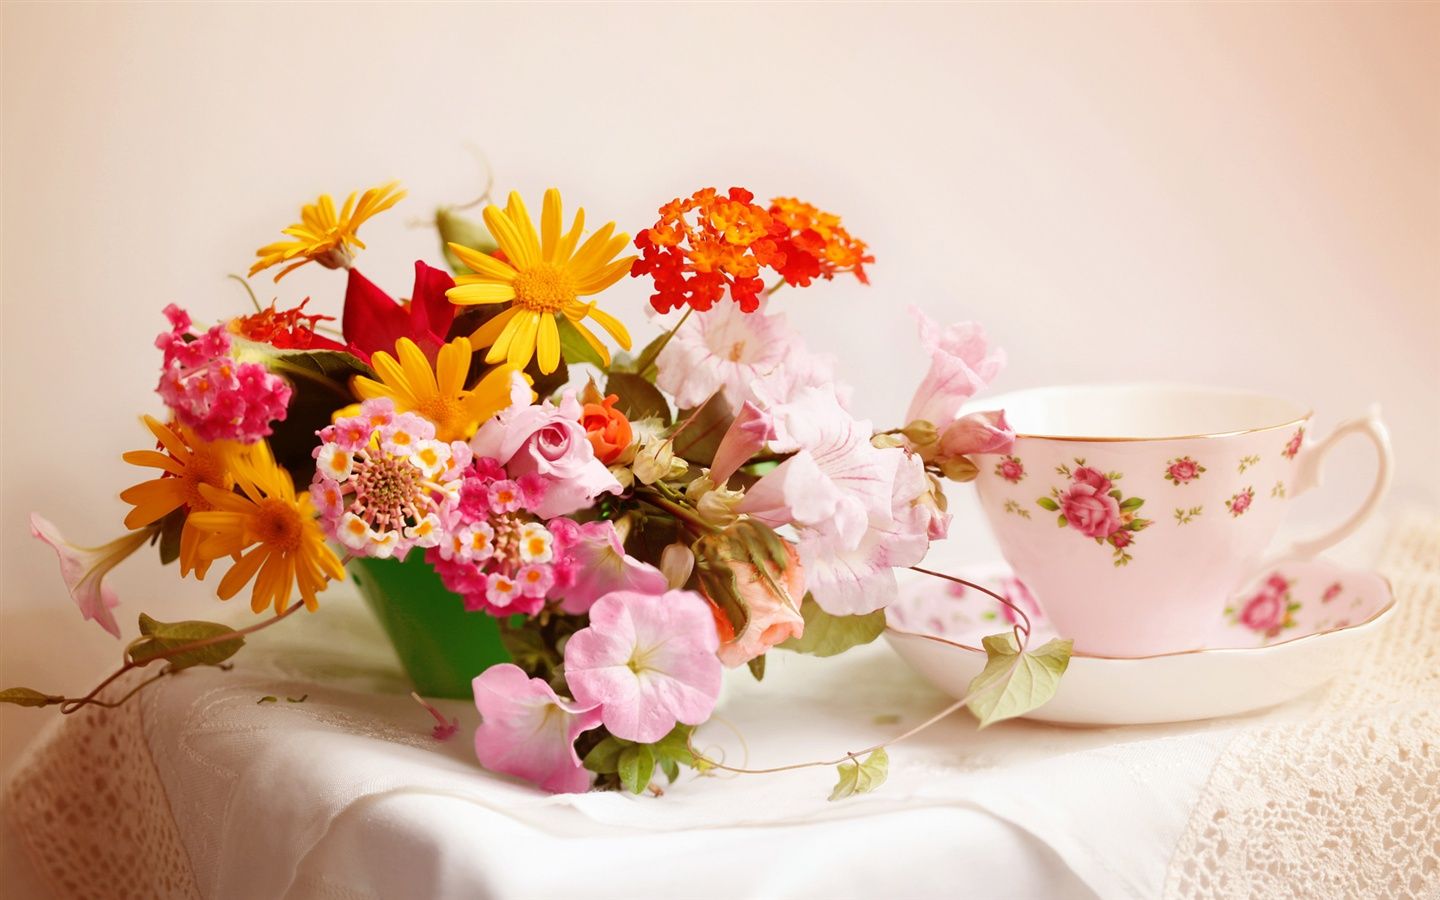 Home floral arrangements, table, teacup Wallpaper | 1440x900 ...